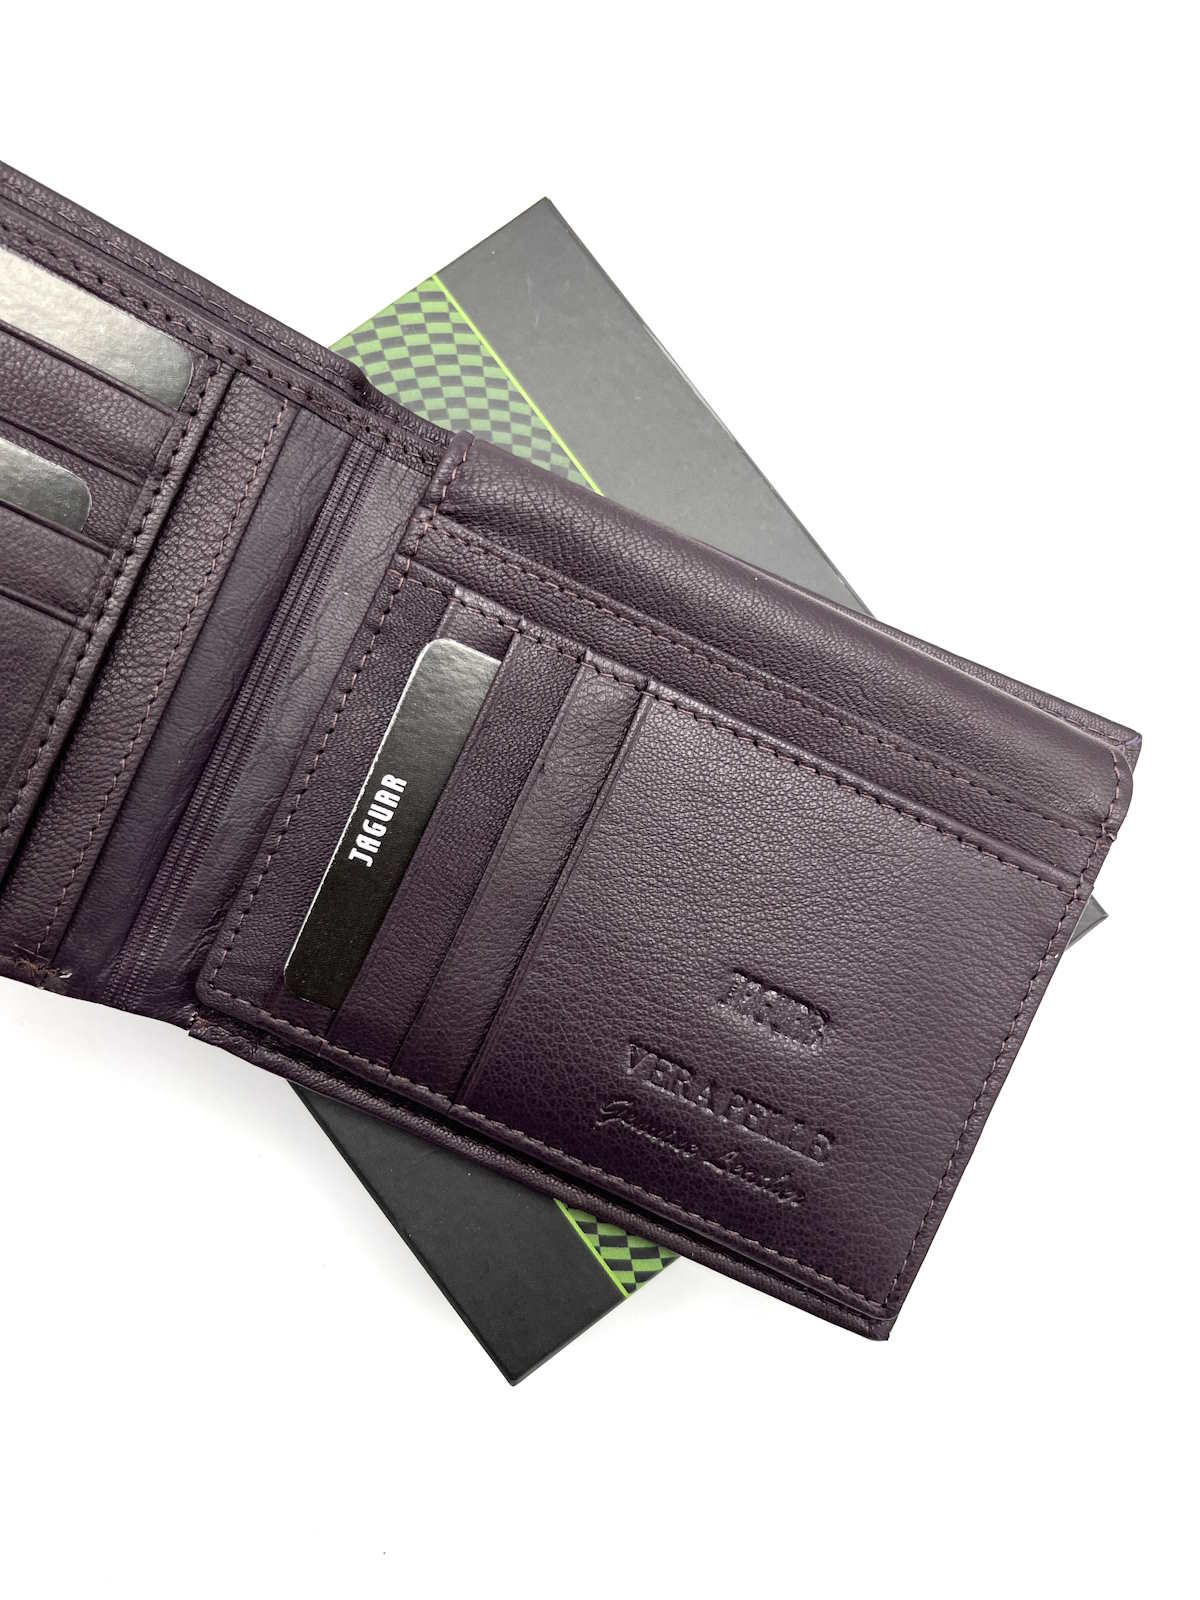 Genuine leather wallet, Jaguar, for men, art. PF774-4